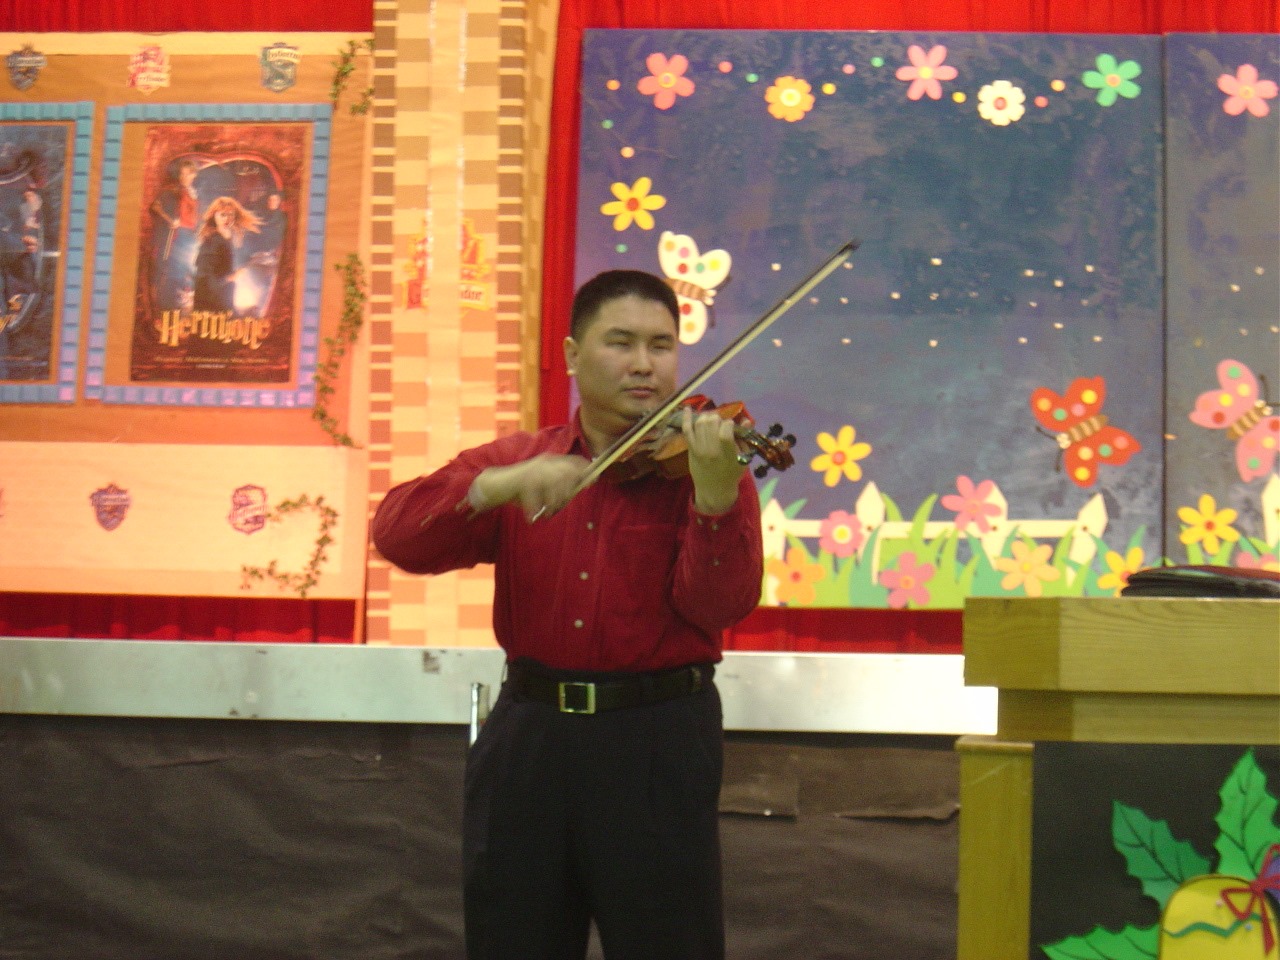 拉小提琴也是李森光的強項。